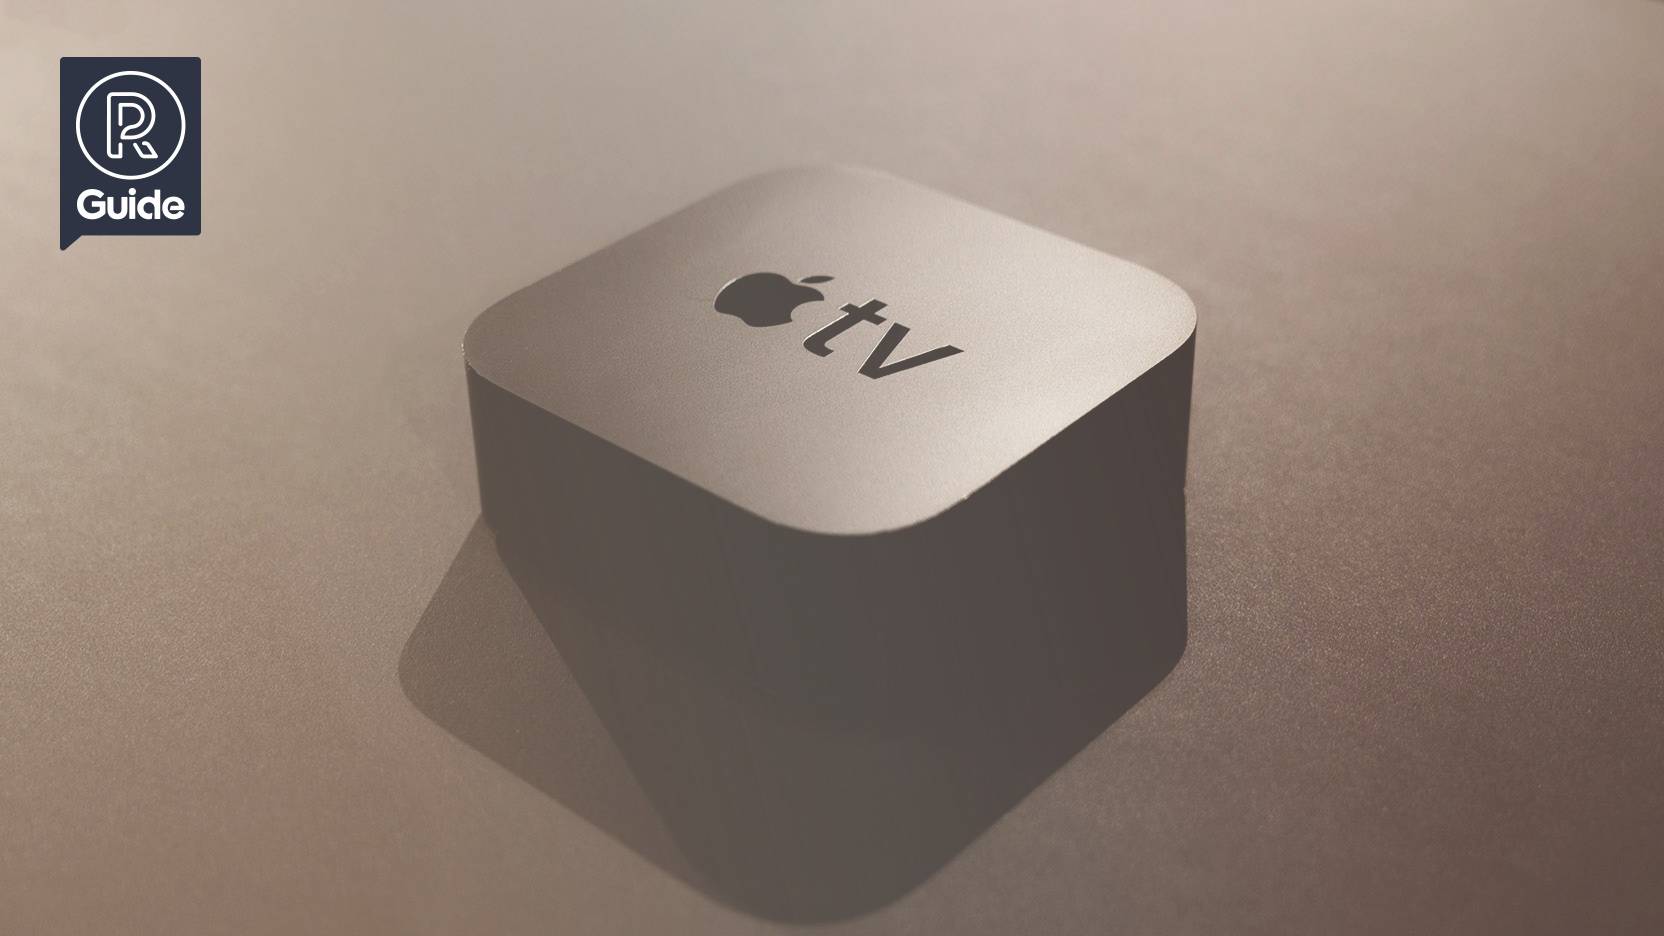 GUIDE: Allt du behöver veta om Apple TV (2019)